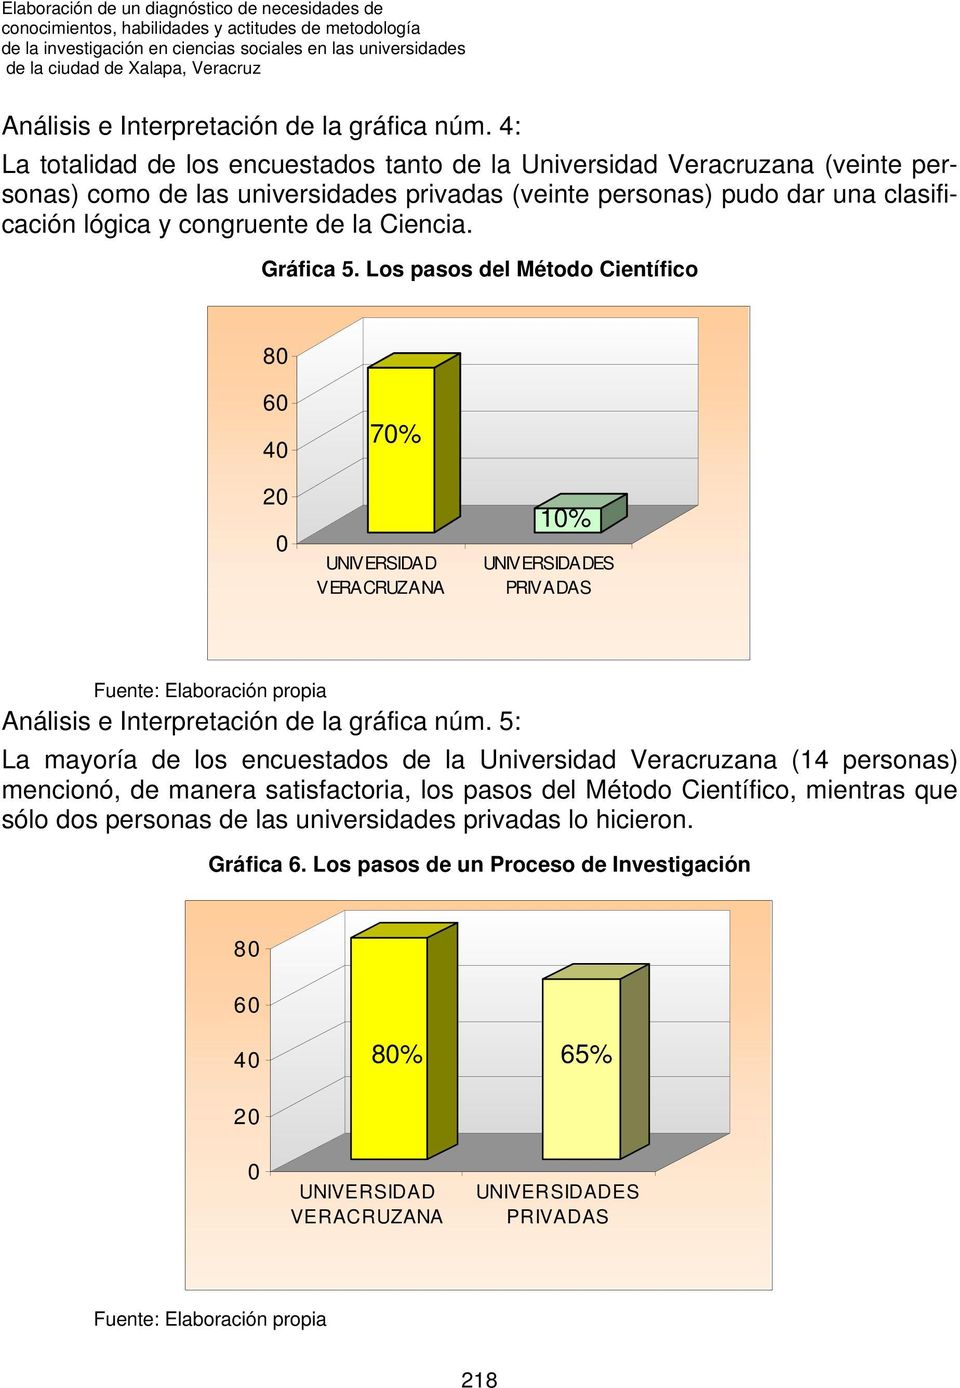 4: La totalidad de los encuestados tanto de la Universidad Veracruzana (veinte personas) como de las universidades privadas (veinte personas) pudo dar una clasificación lógica y congruente de la